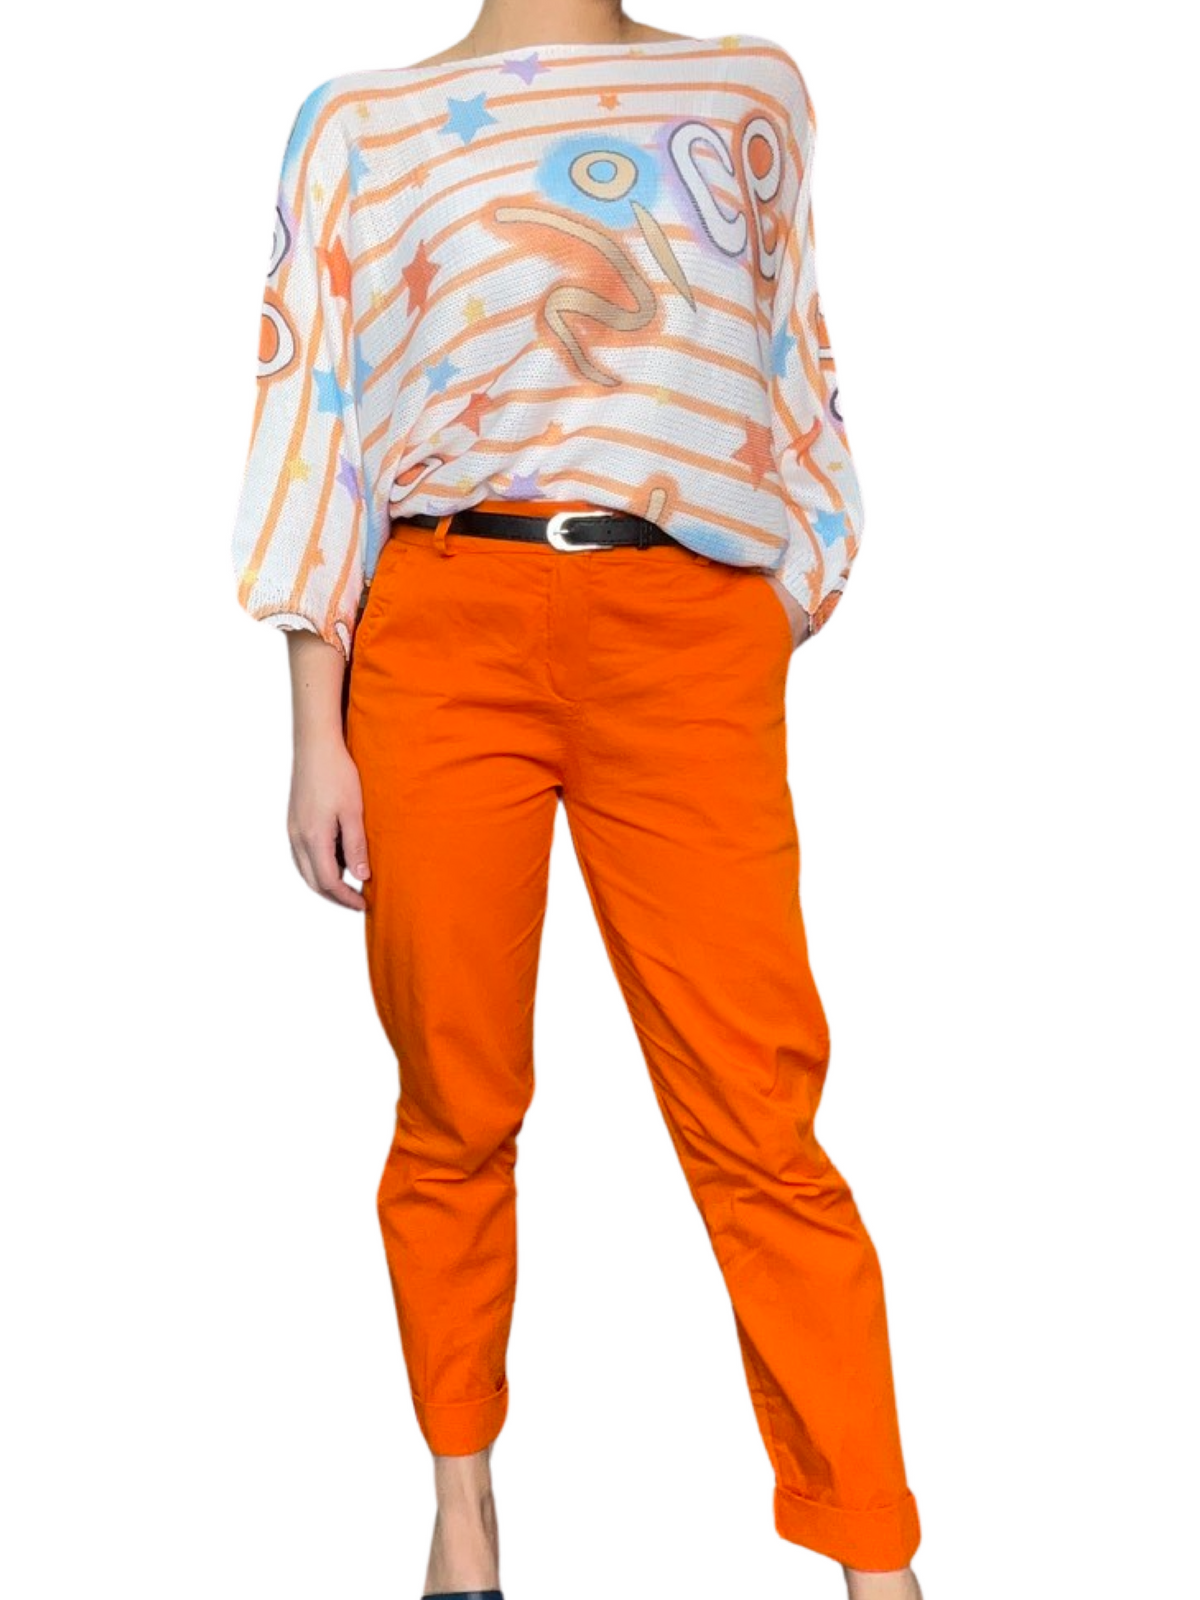 Pantalon cigarette orange pour femme avec ceinture noire et chandail en mailles à manche longue.